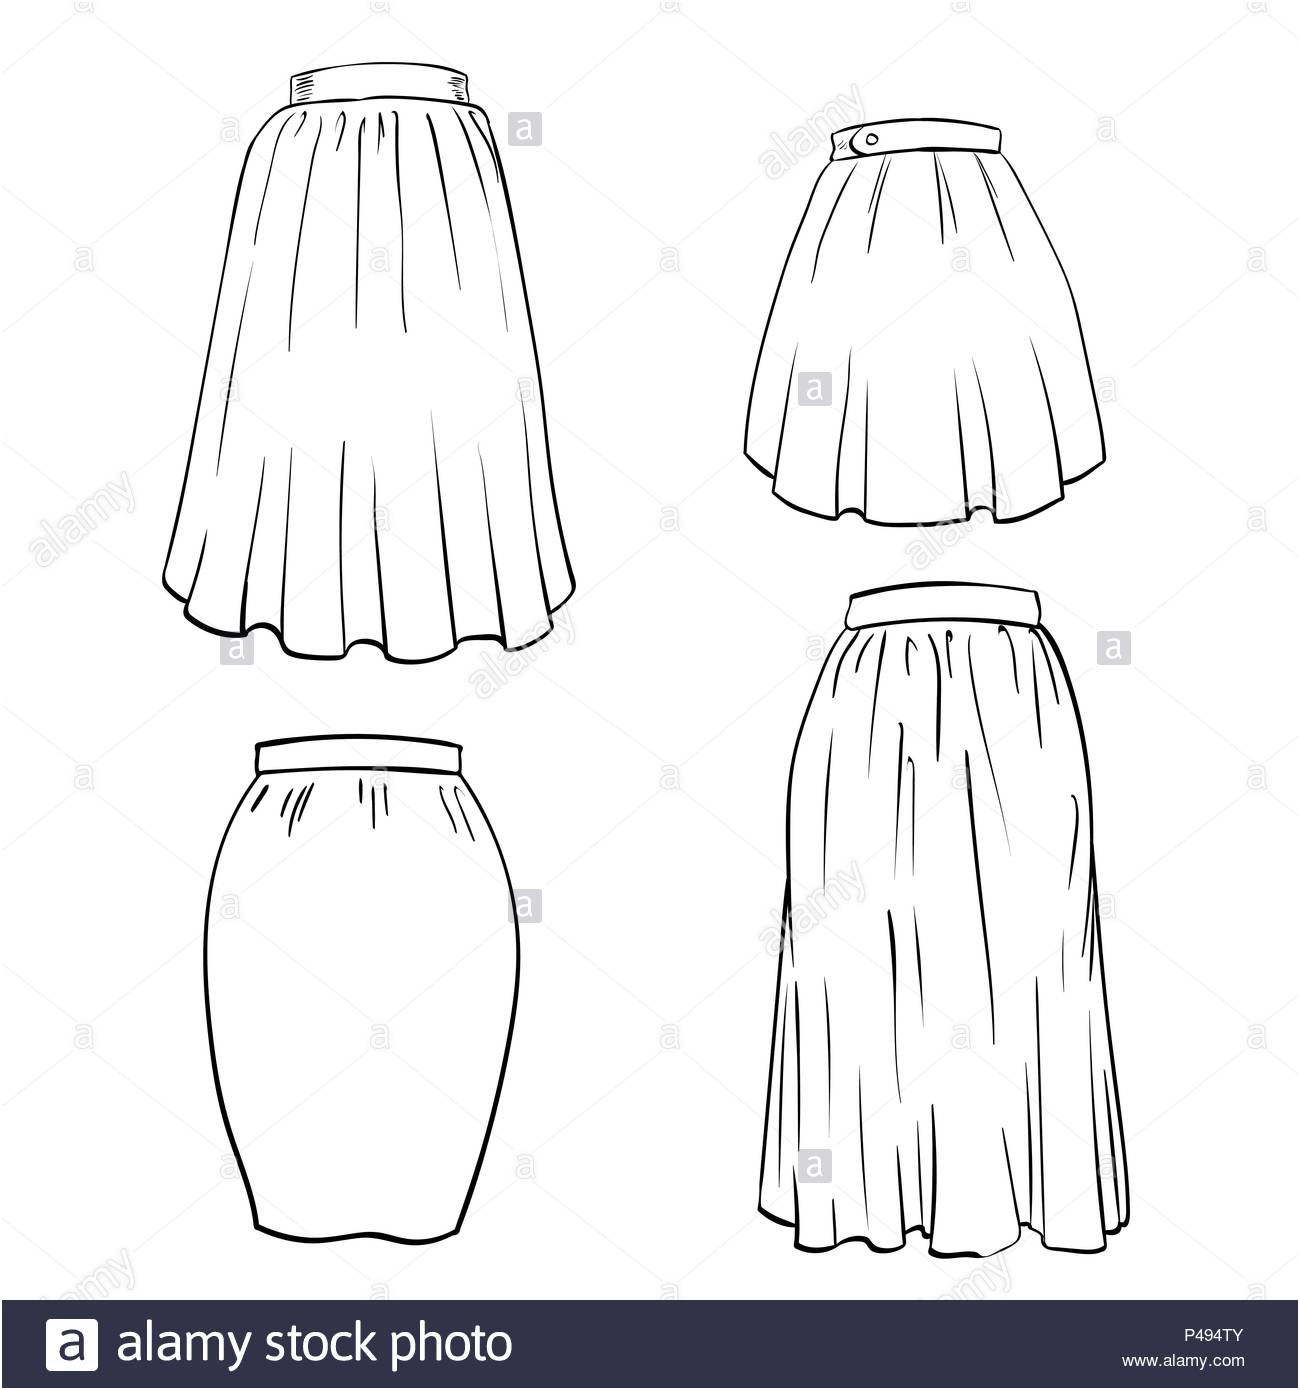 la main de la jupe isole sur fond blanc le noir et blanc simple ligne vector illustration pour livre de coloriage dessin vector illustration image